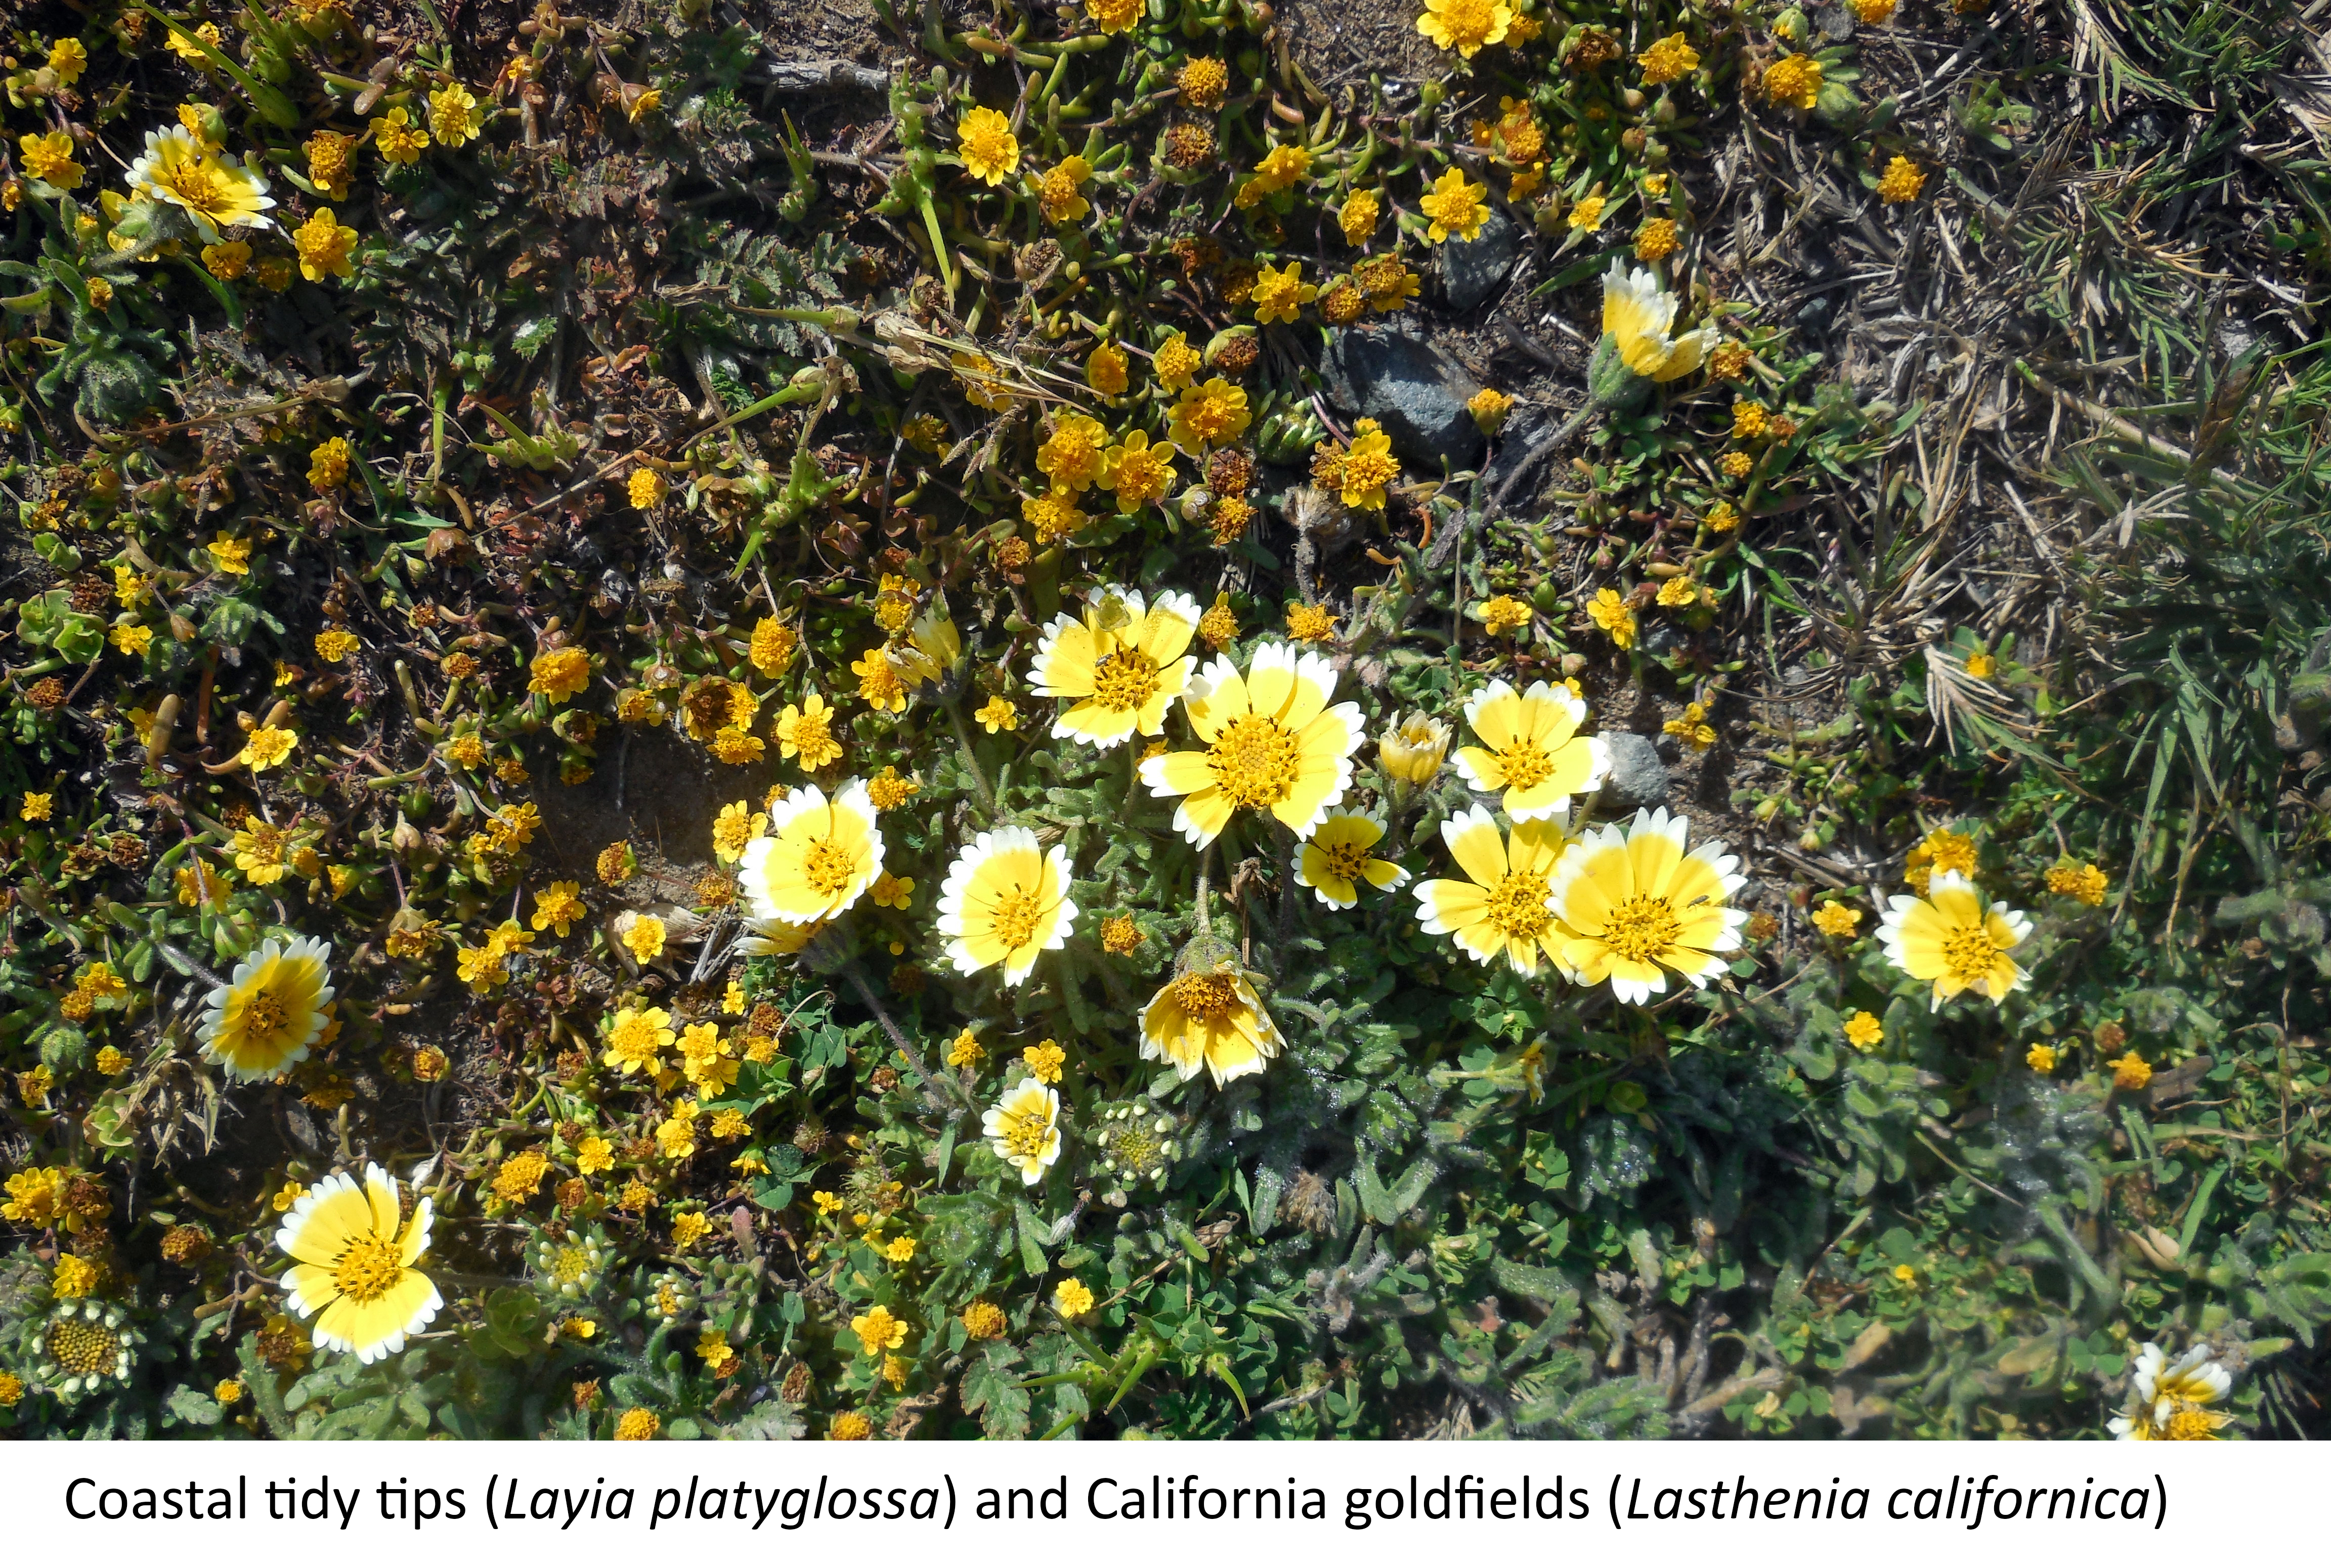 coastal tidy tips (Layia platyglossa) and California goldfields (Lasthenia californica)